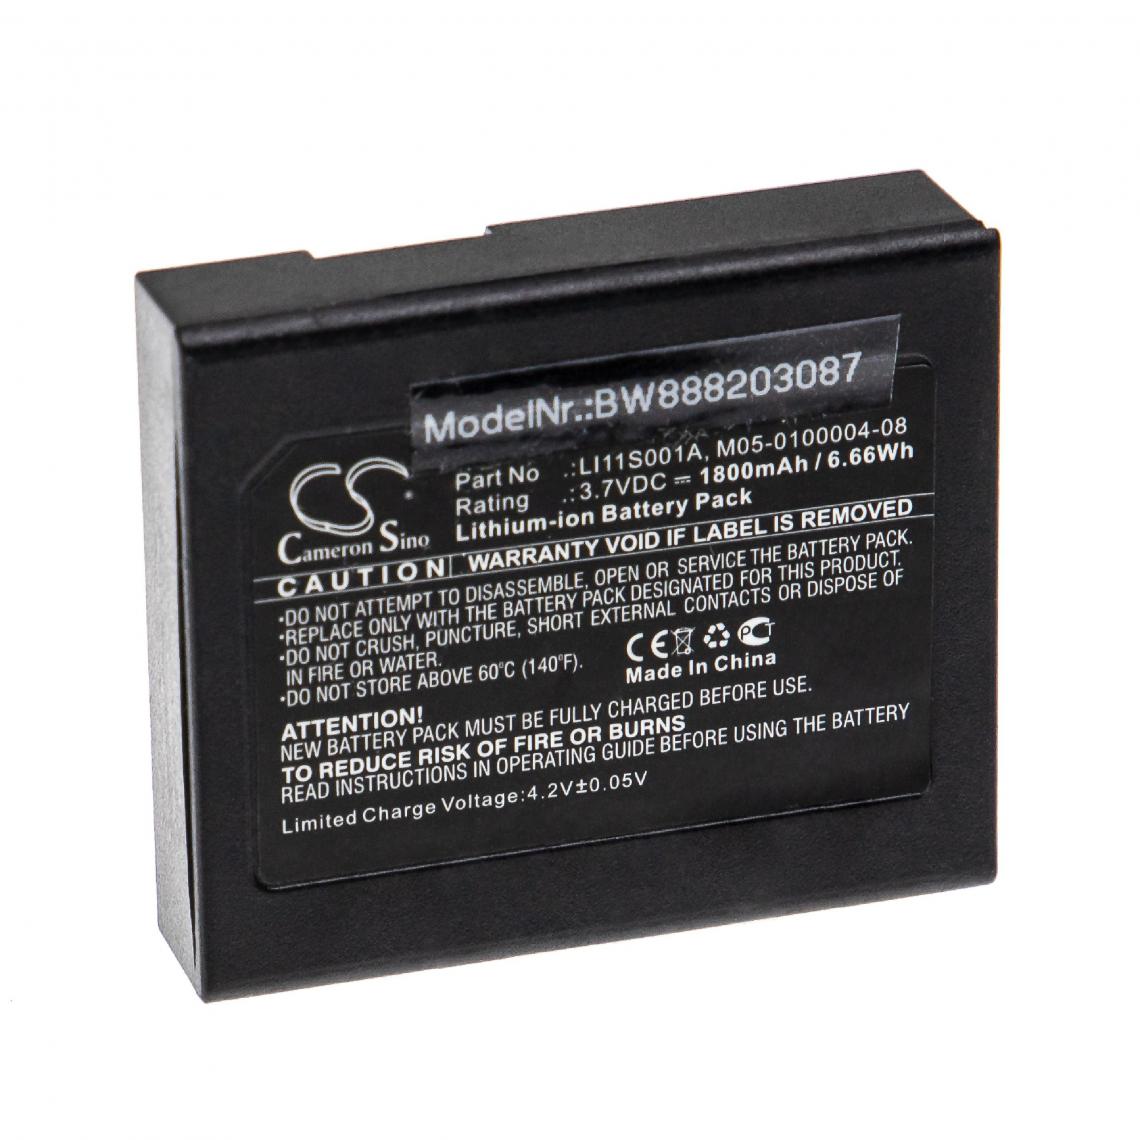 Vhbw - vhbw Batterie remplacement pour Mindray 022-000008-00, LI11S001A, M05-0100004-08 pour appareil médical (1800mAh, 3,7V, Li-ion) - Piles spécifiques